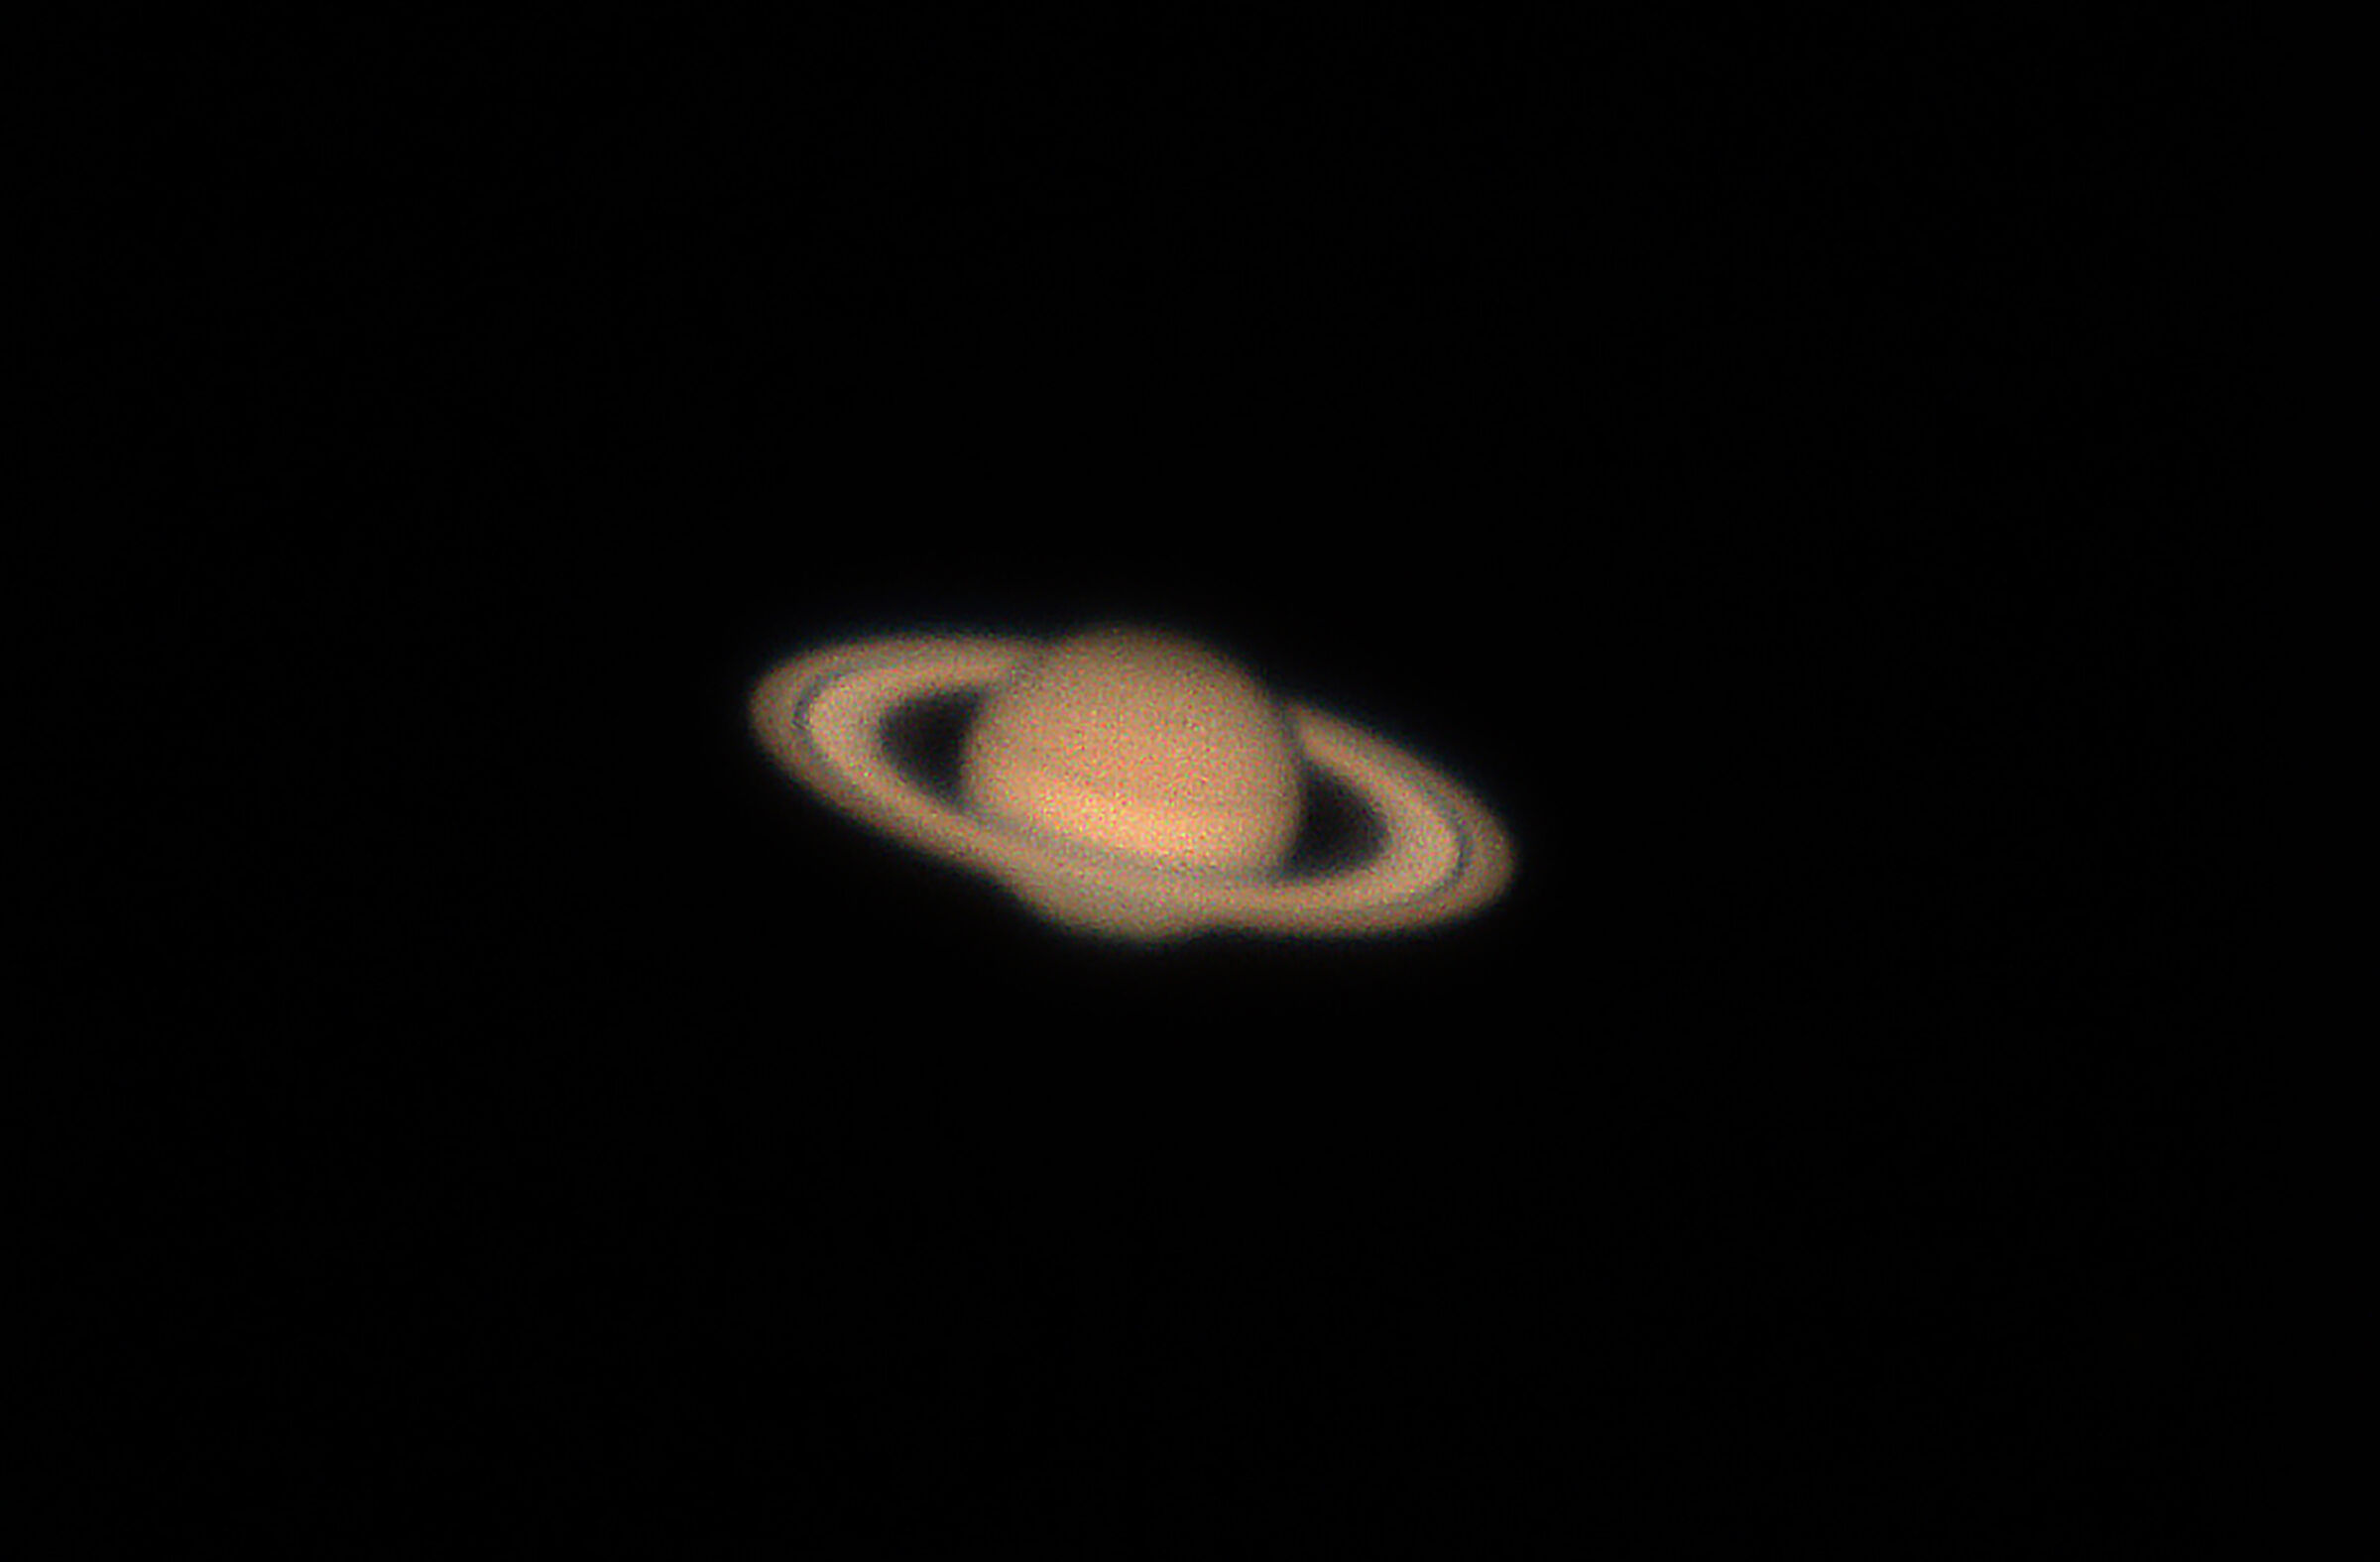 Saturno in tutto il suo splendore...